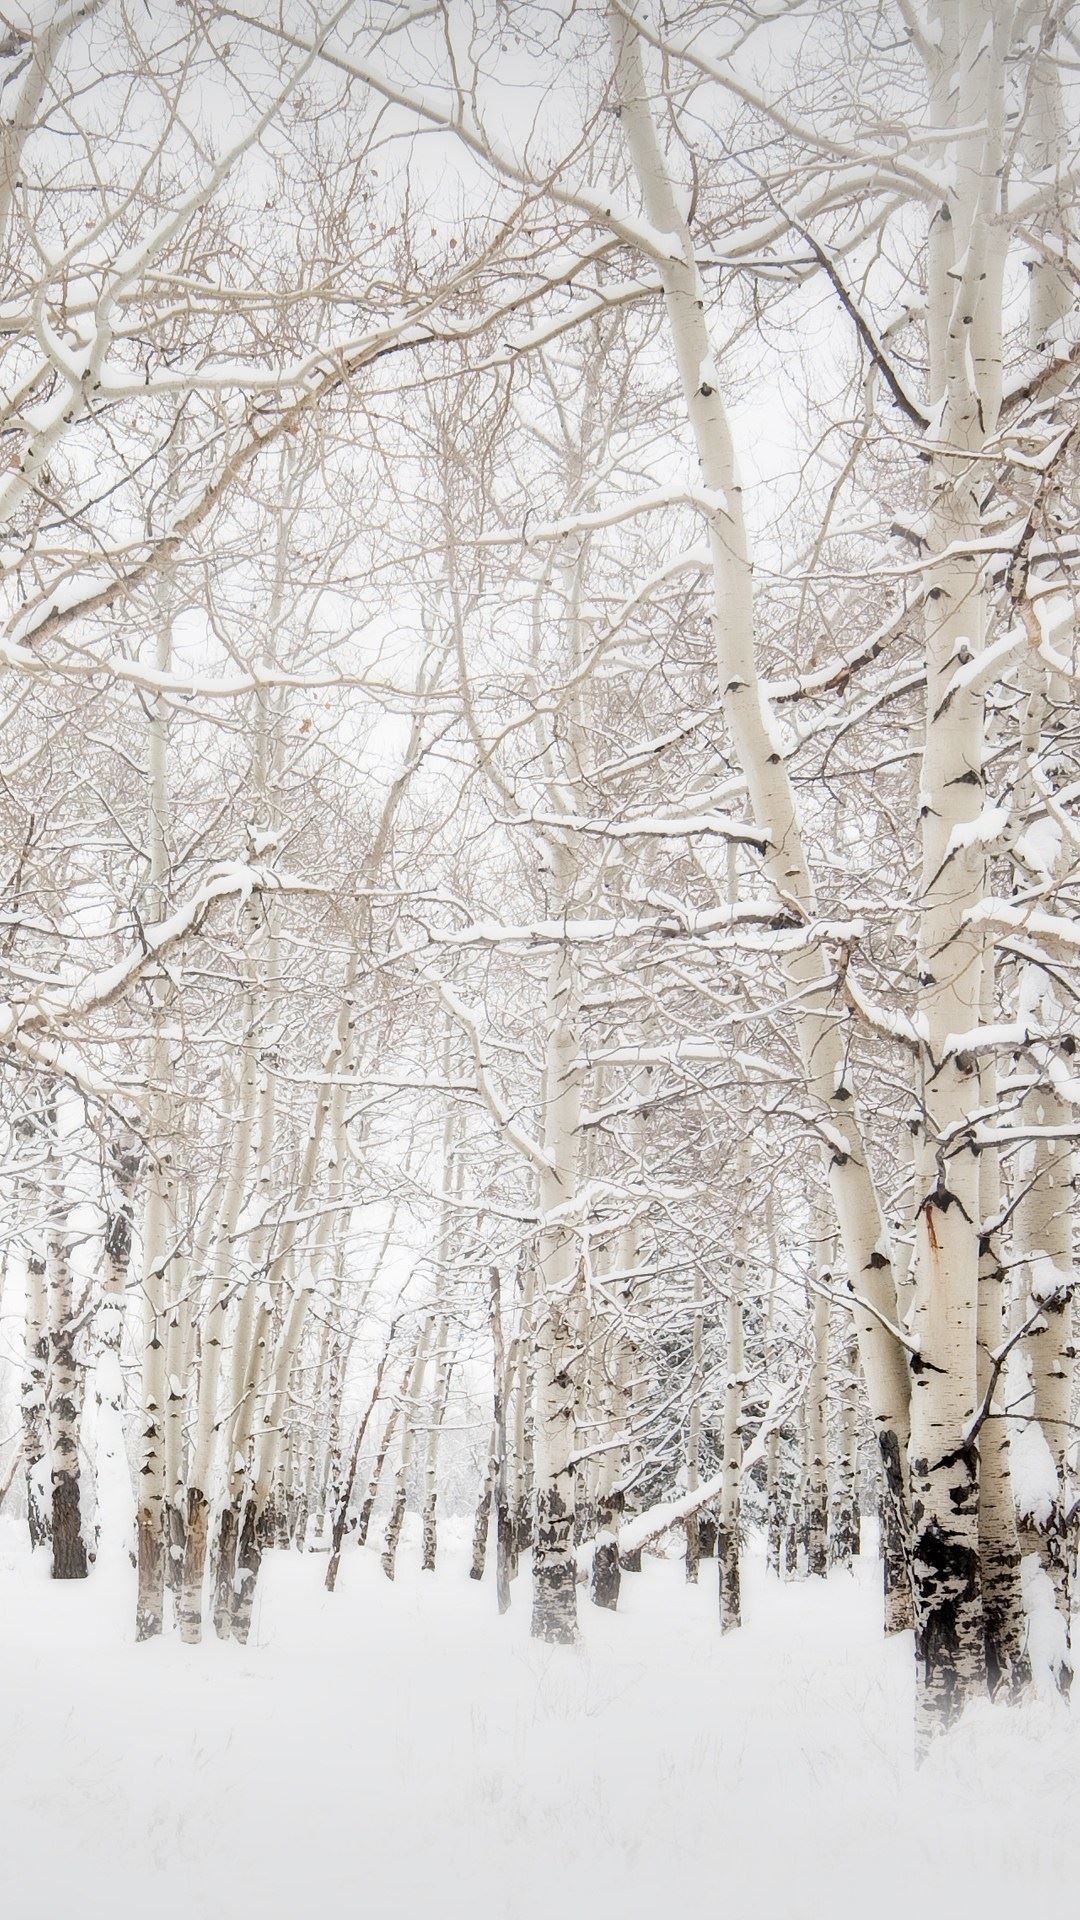 Birch Trees Winter Landscape iPhone 6 Plus HD Wallpaper